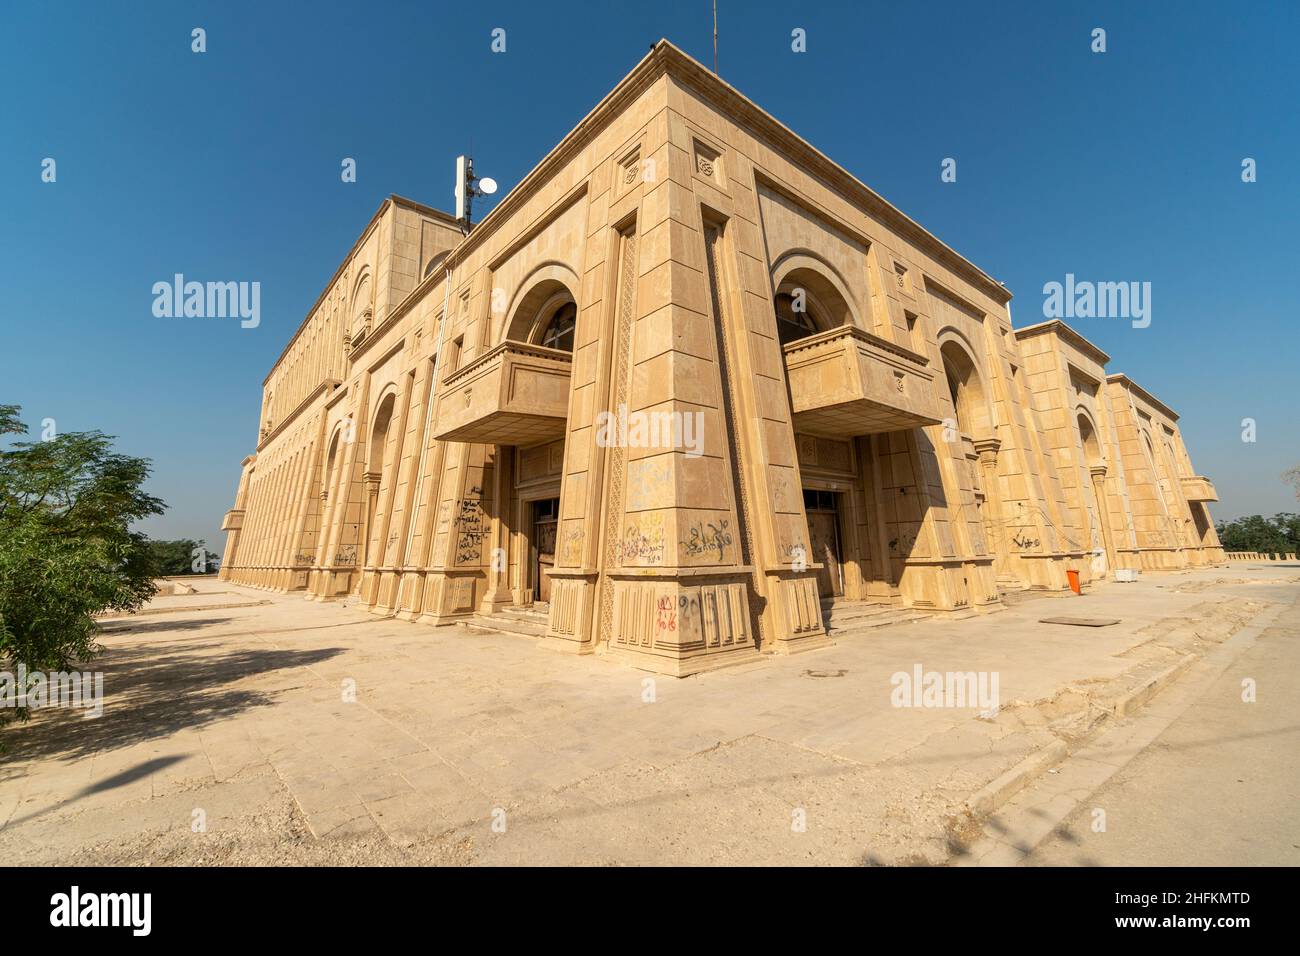 Palais abandonné de Saddam Hussein à Babylone, Irak Banque D'Images